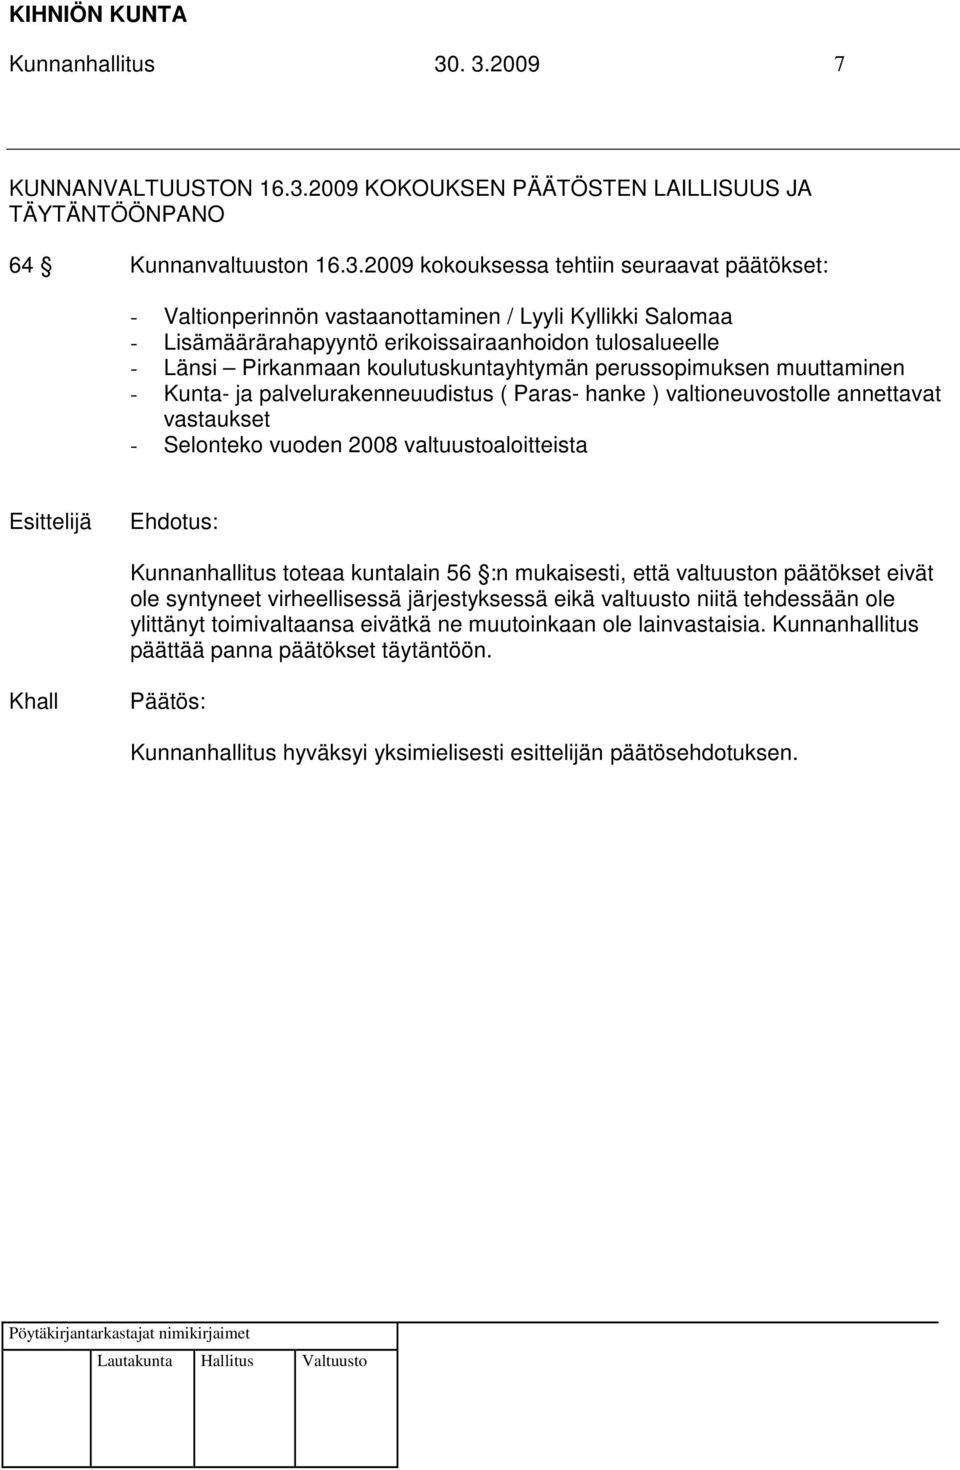 Lyyli Kyllikki Salomaa - Lisämäärärahapyyntö erikoissairaanhoidon tulosalueelle - Länsi Pirkanmaan koulutuskuntayhtymän perussopimuksen muuttaminen - Kunta- ja palvelurakenneuudistus ( Paras- hanke )